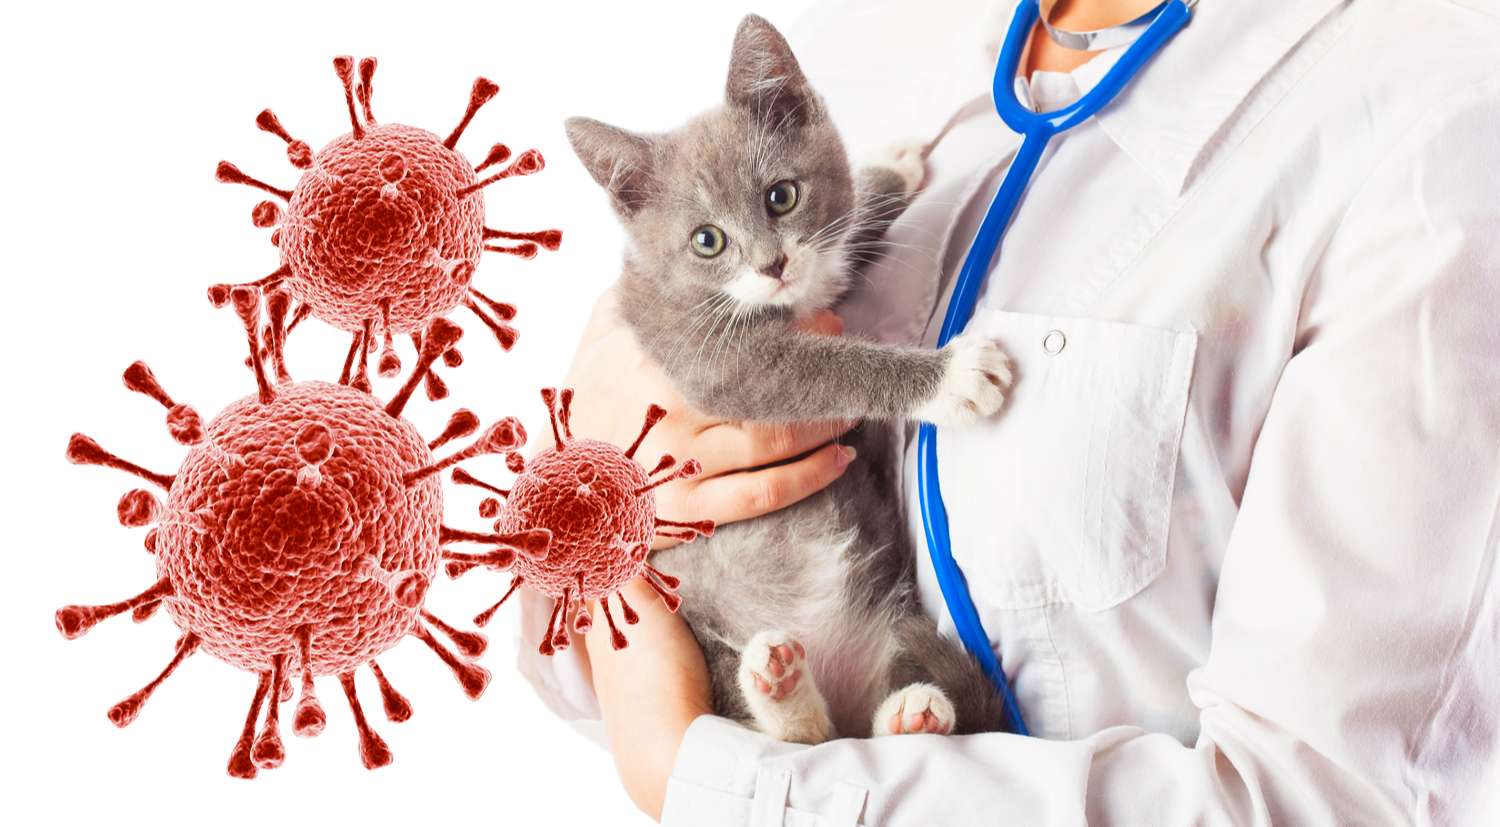 Вирусный перитонит у кошек: симптомы, лечение, профилактика
вирусный перитонит у кошек: симптомы, лечение, профилактика